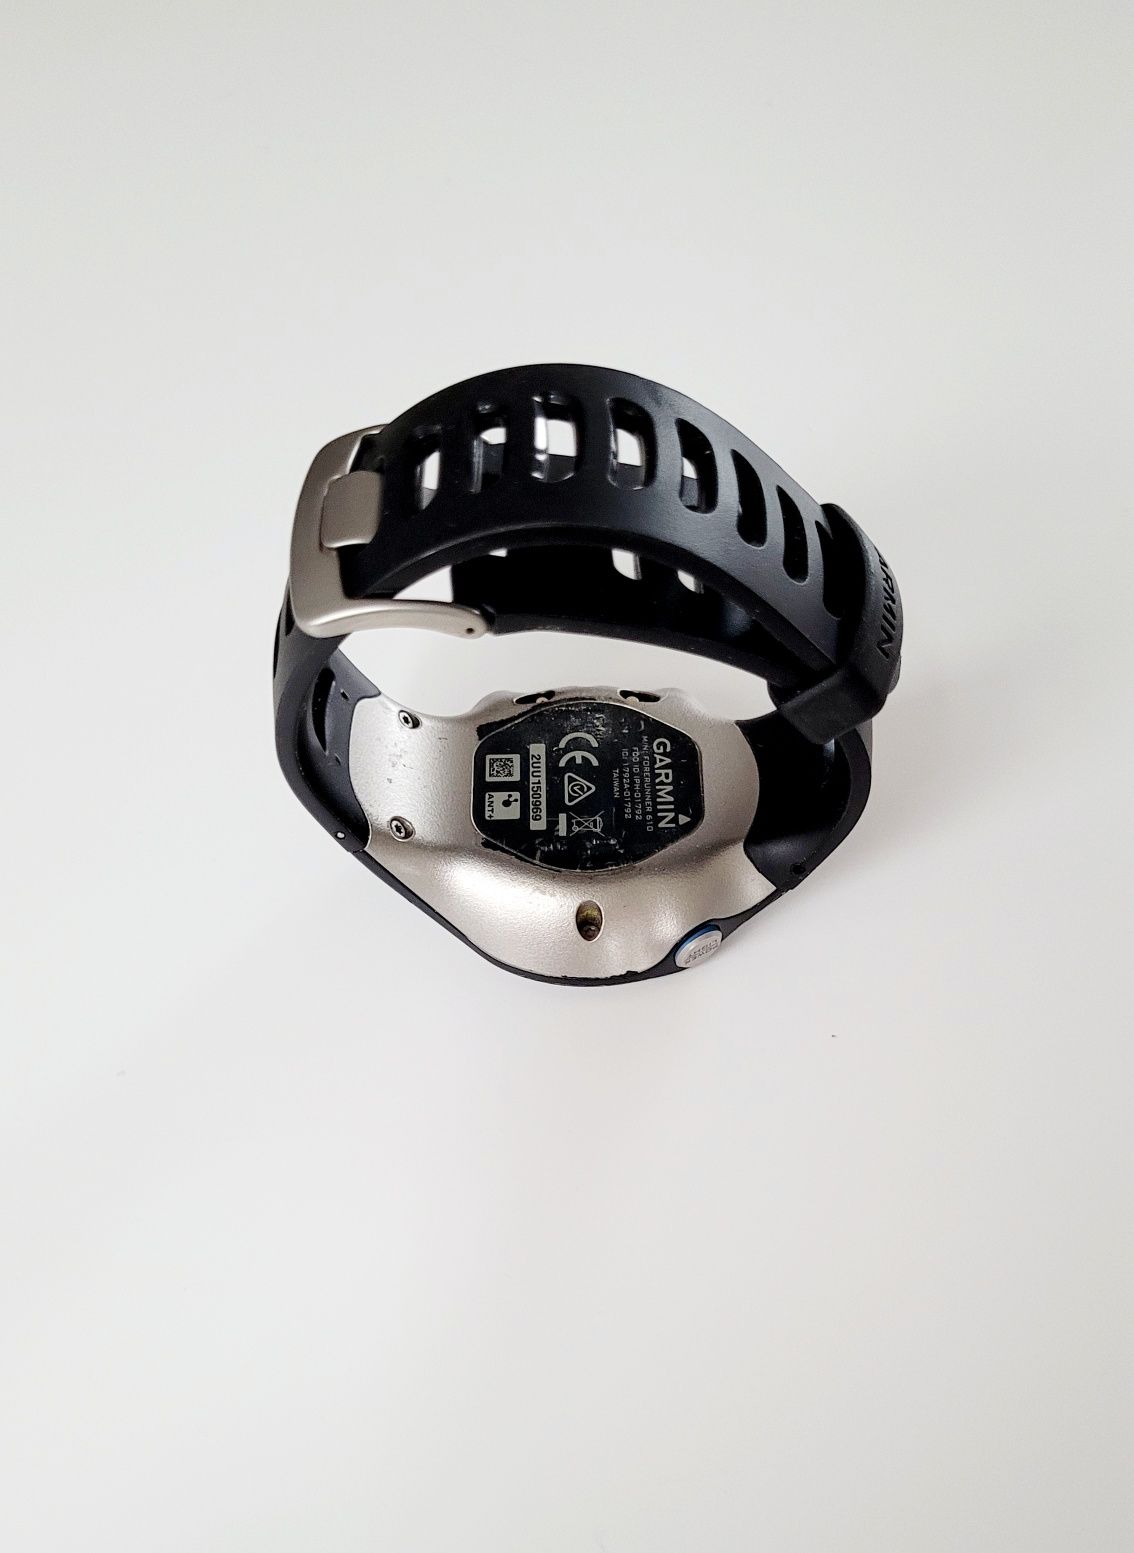 Zegarek sportowy Garmin Forerunner 610 dla biegaczy rowerzystów stan b